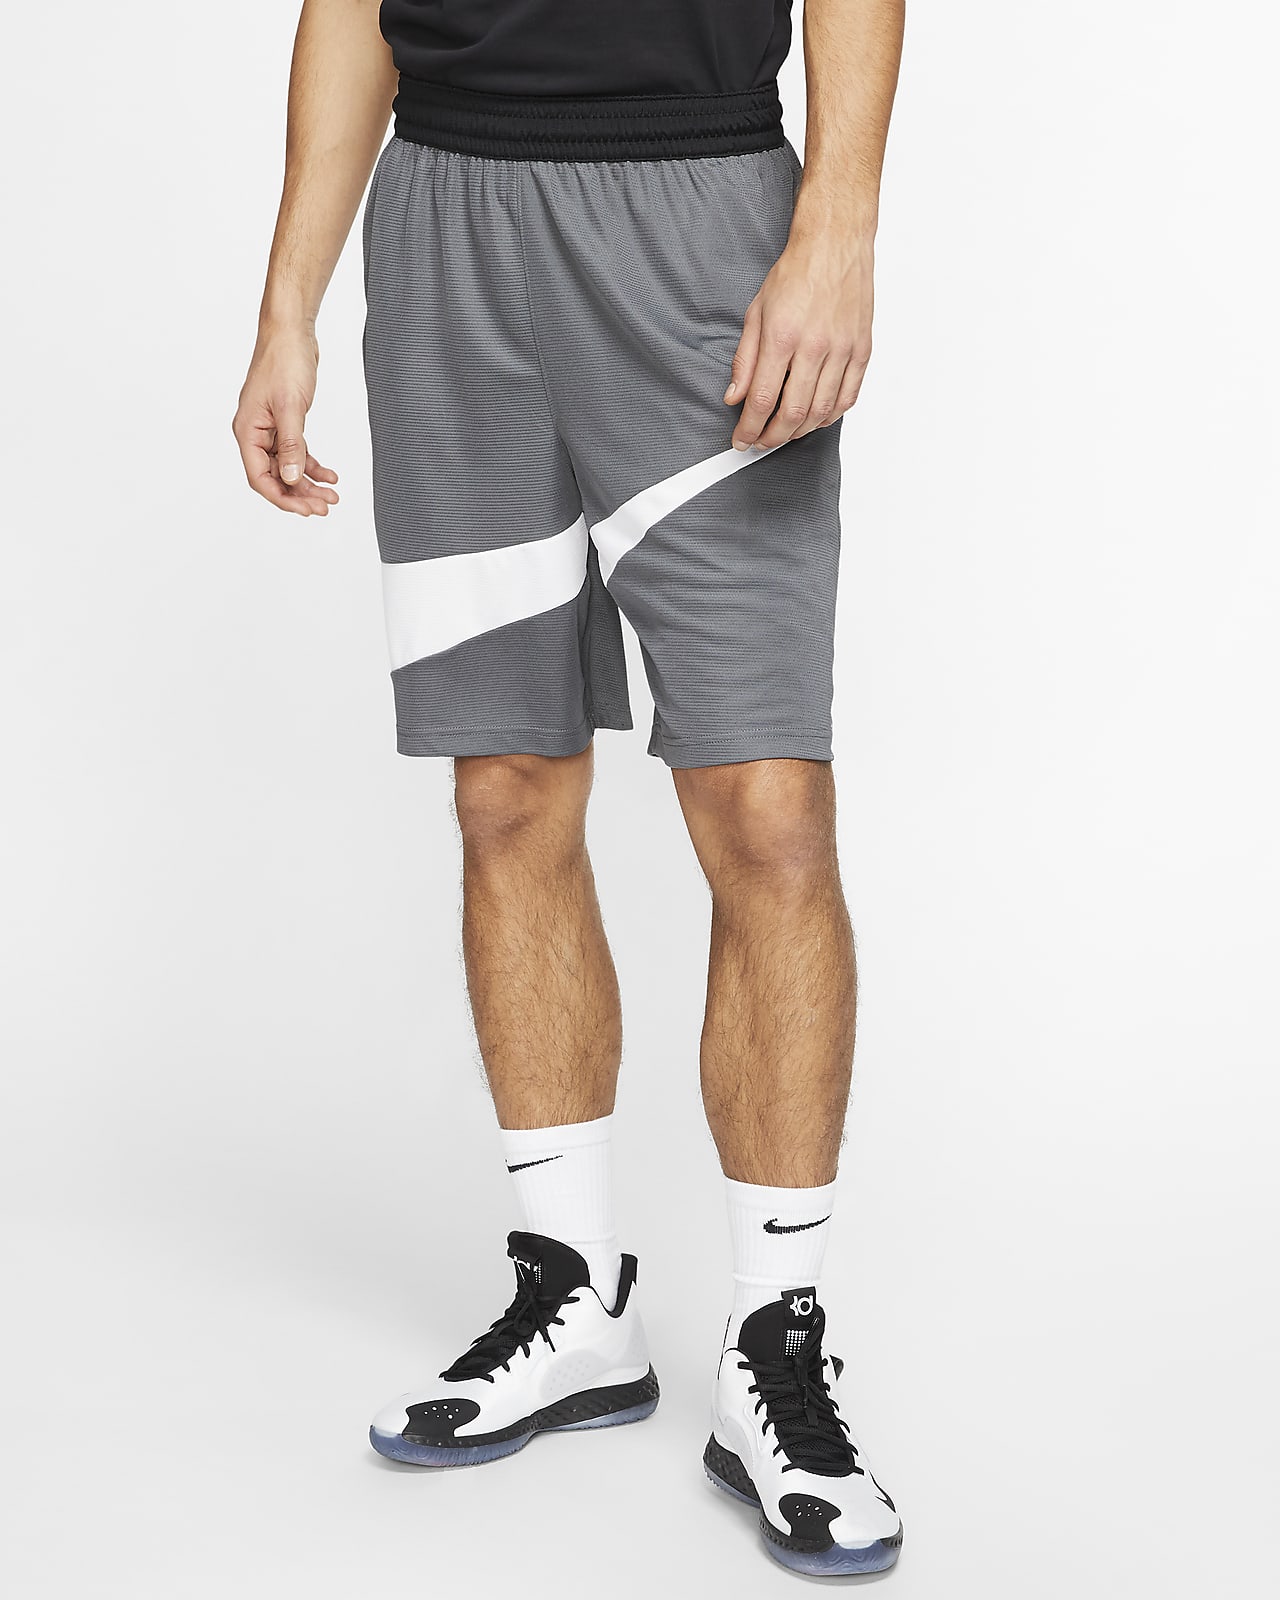 Shorts de básquetbol Nike Dri-FIT